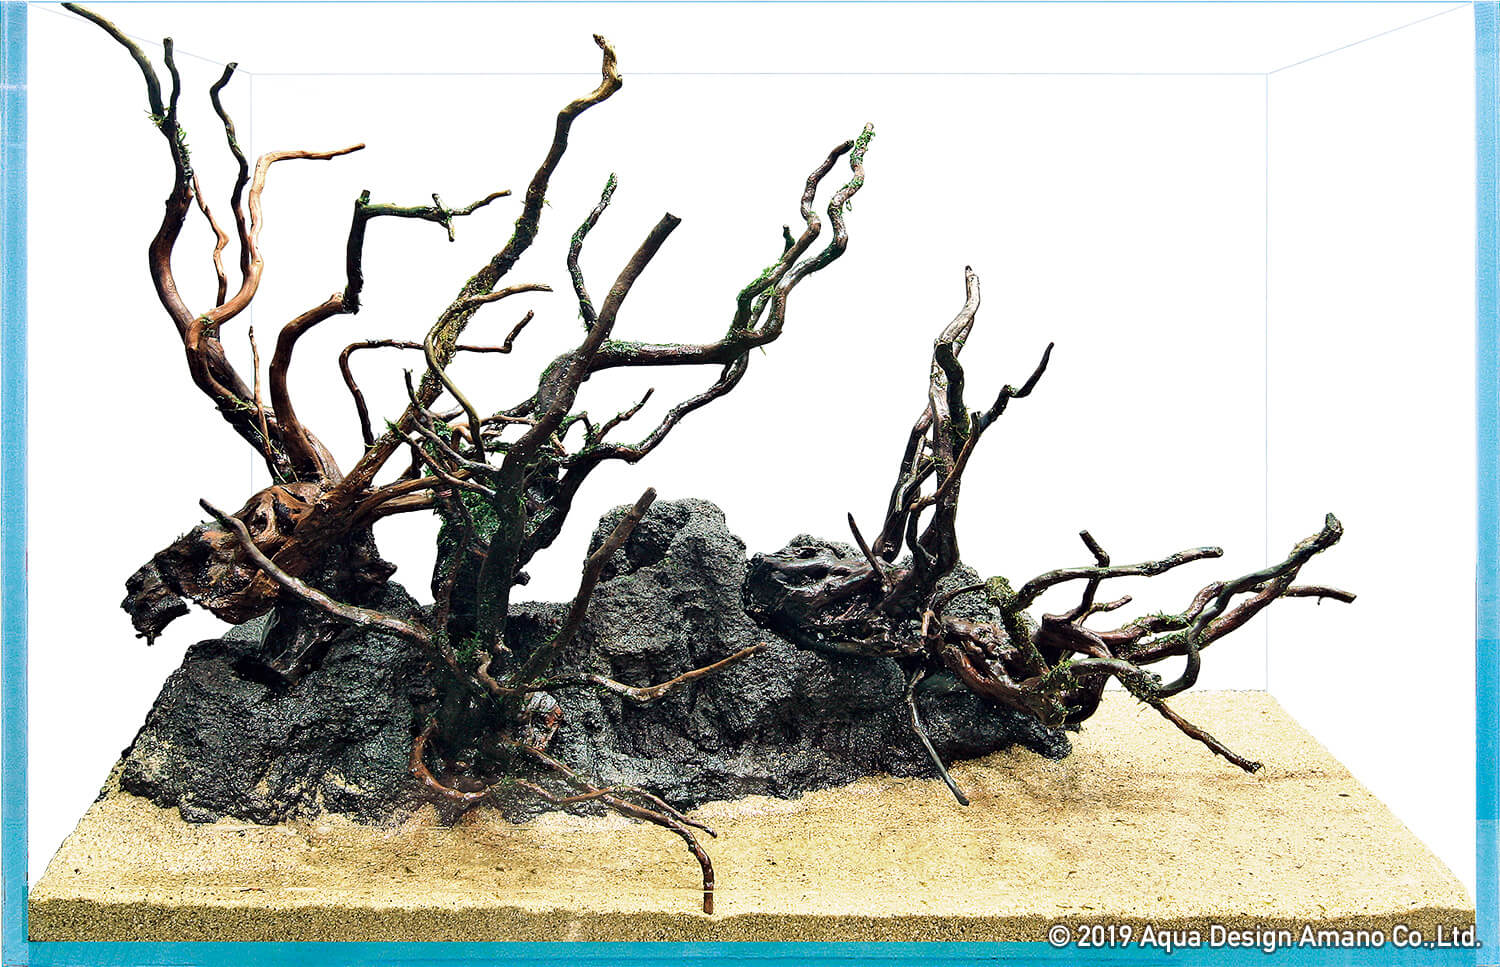 素材で決まる水景の印象-流木の組み方- | AQUA DESIGN AMANO